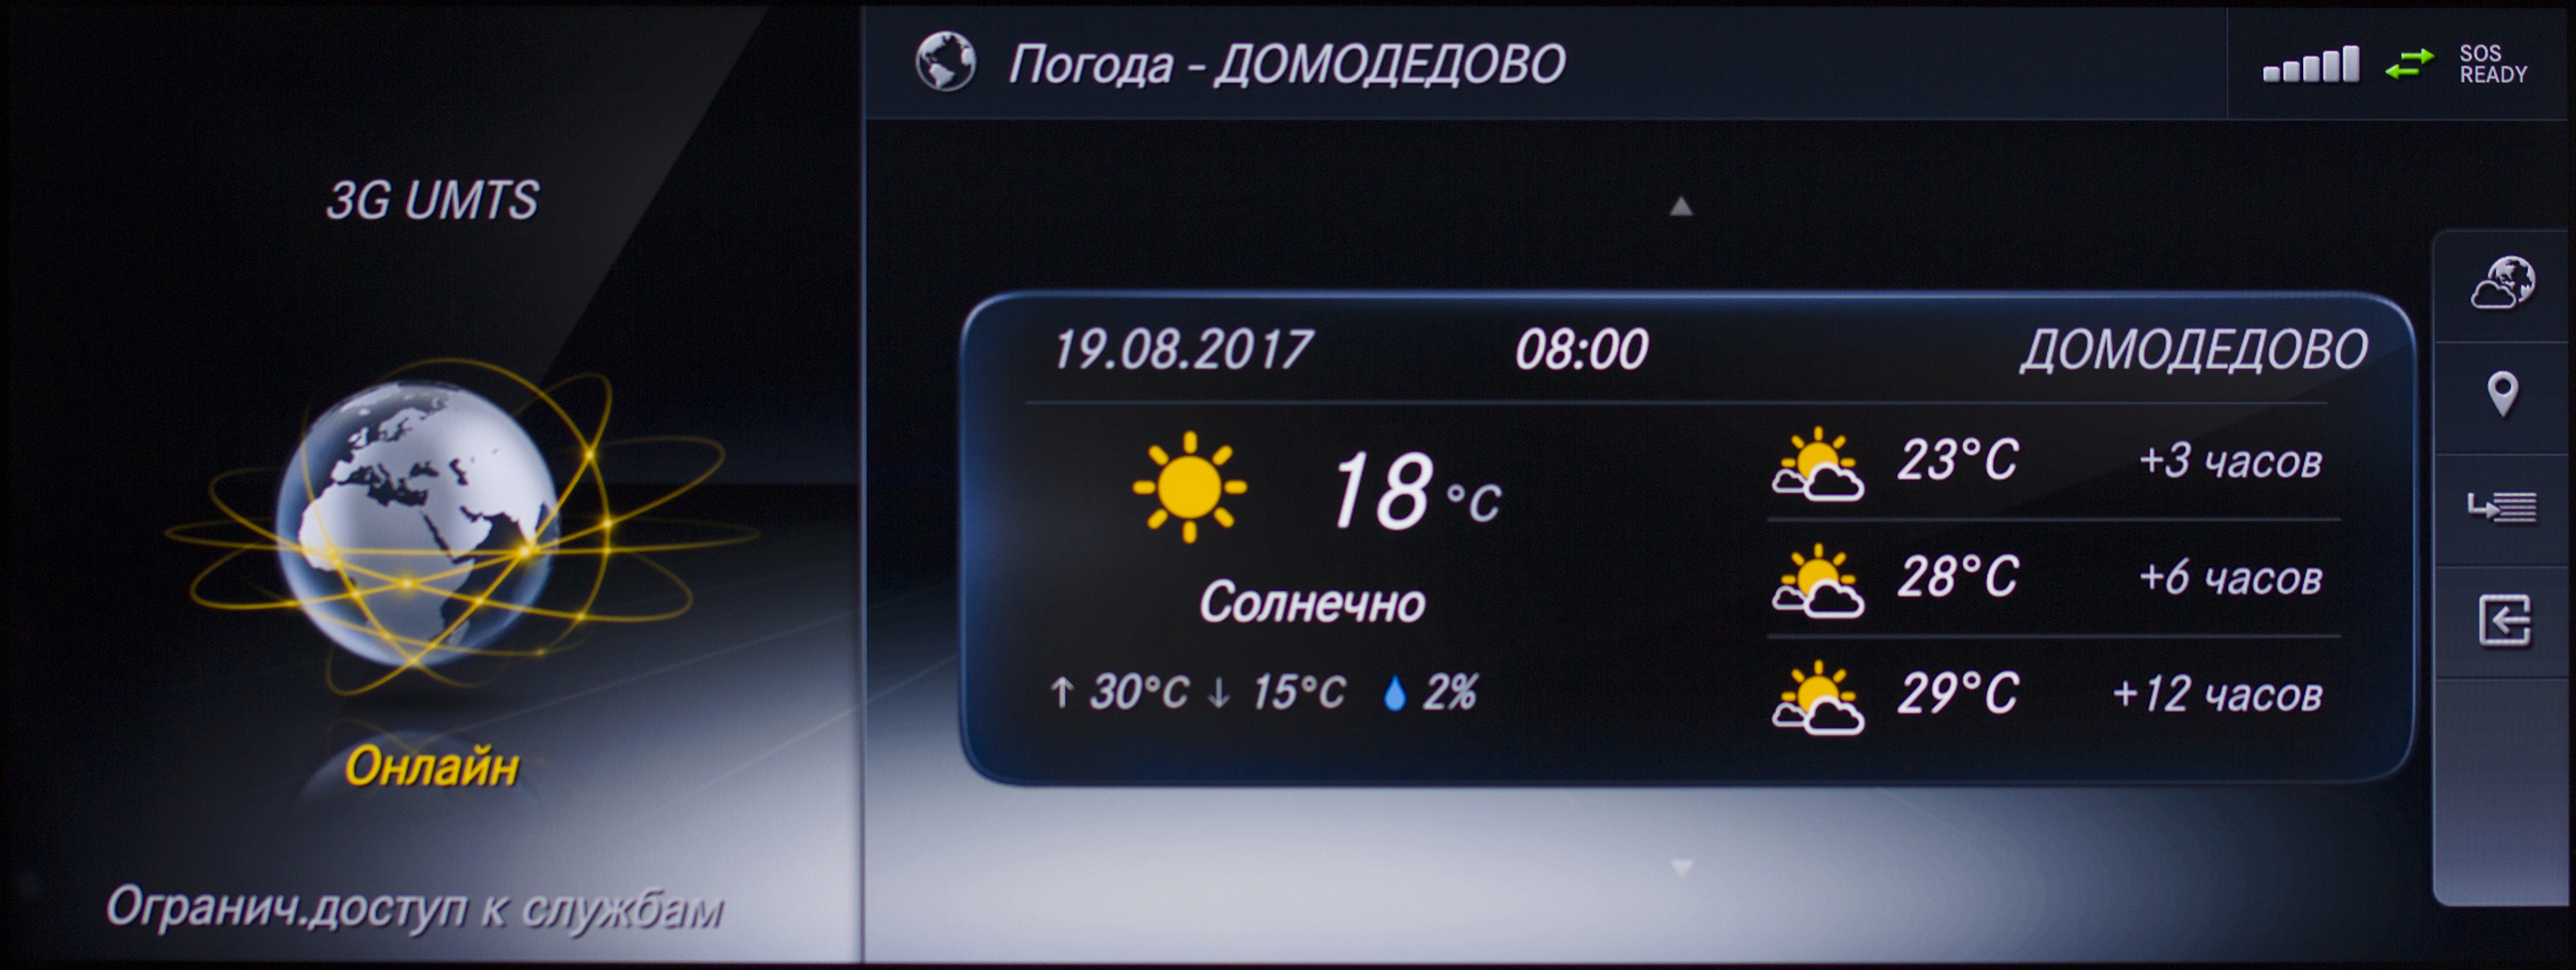 Погода сегодня домодедово часы. Климат Домодедово. Погода в Домодедово. Погода в Домодедово на завтра.